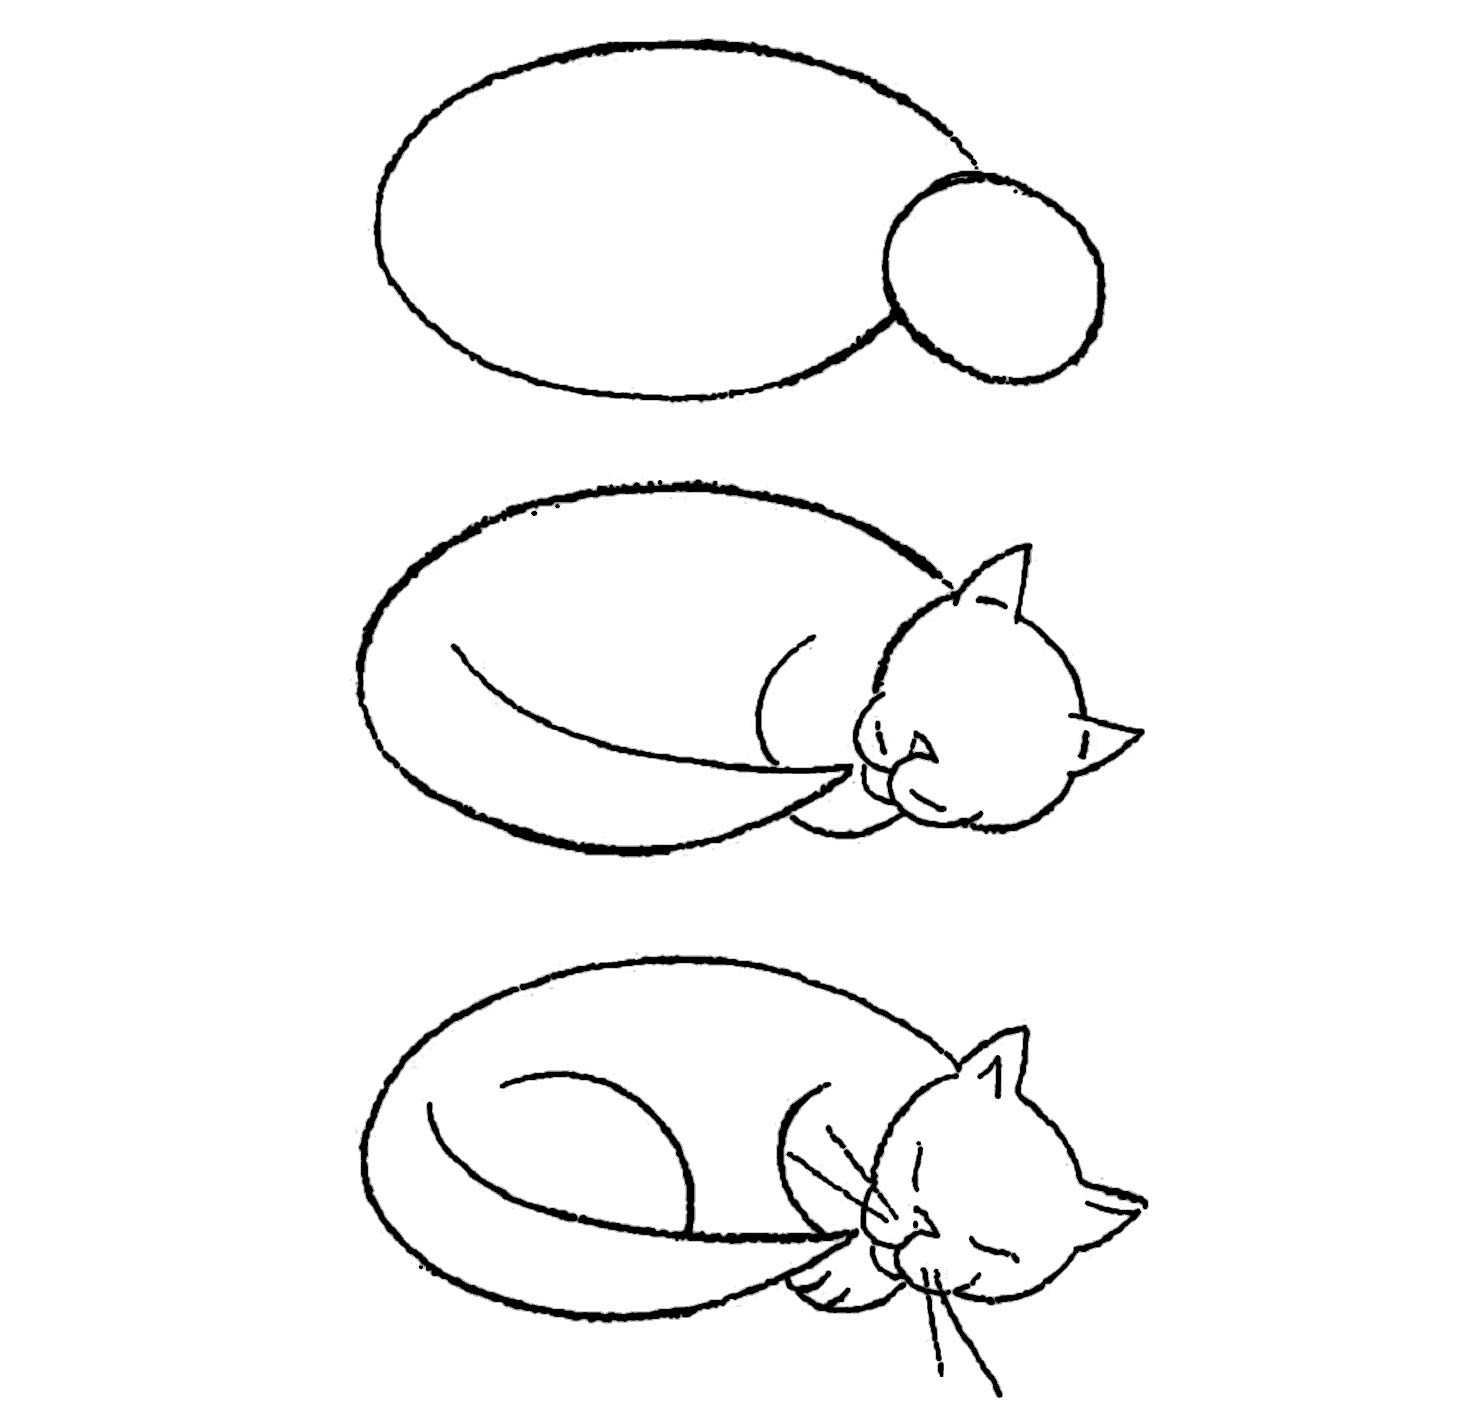 как нарисовать лежащего спящего кота фото